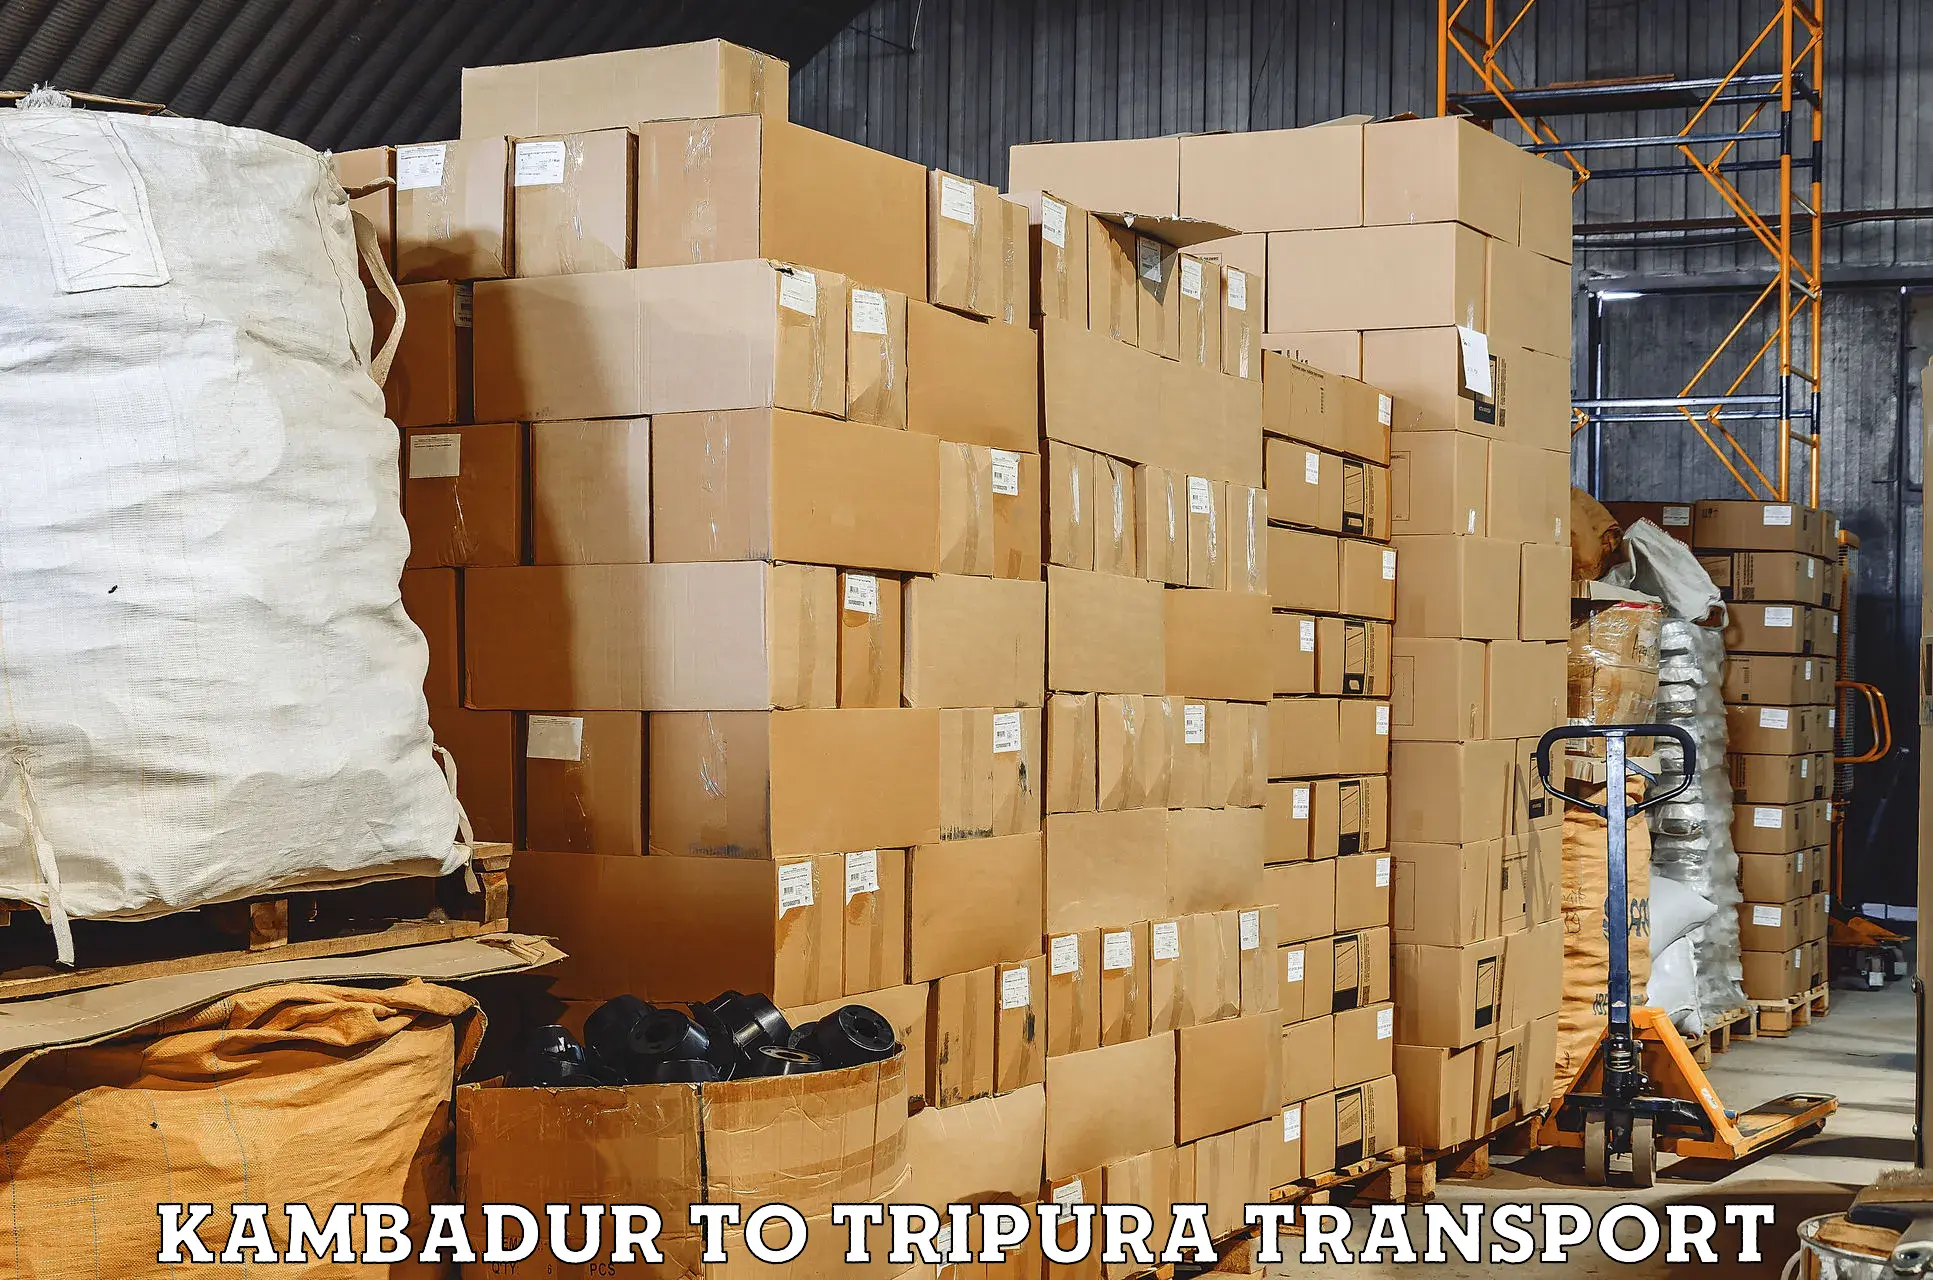 Vehicle transport services Kambadur to Kamalpur